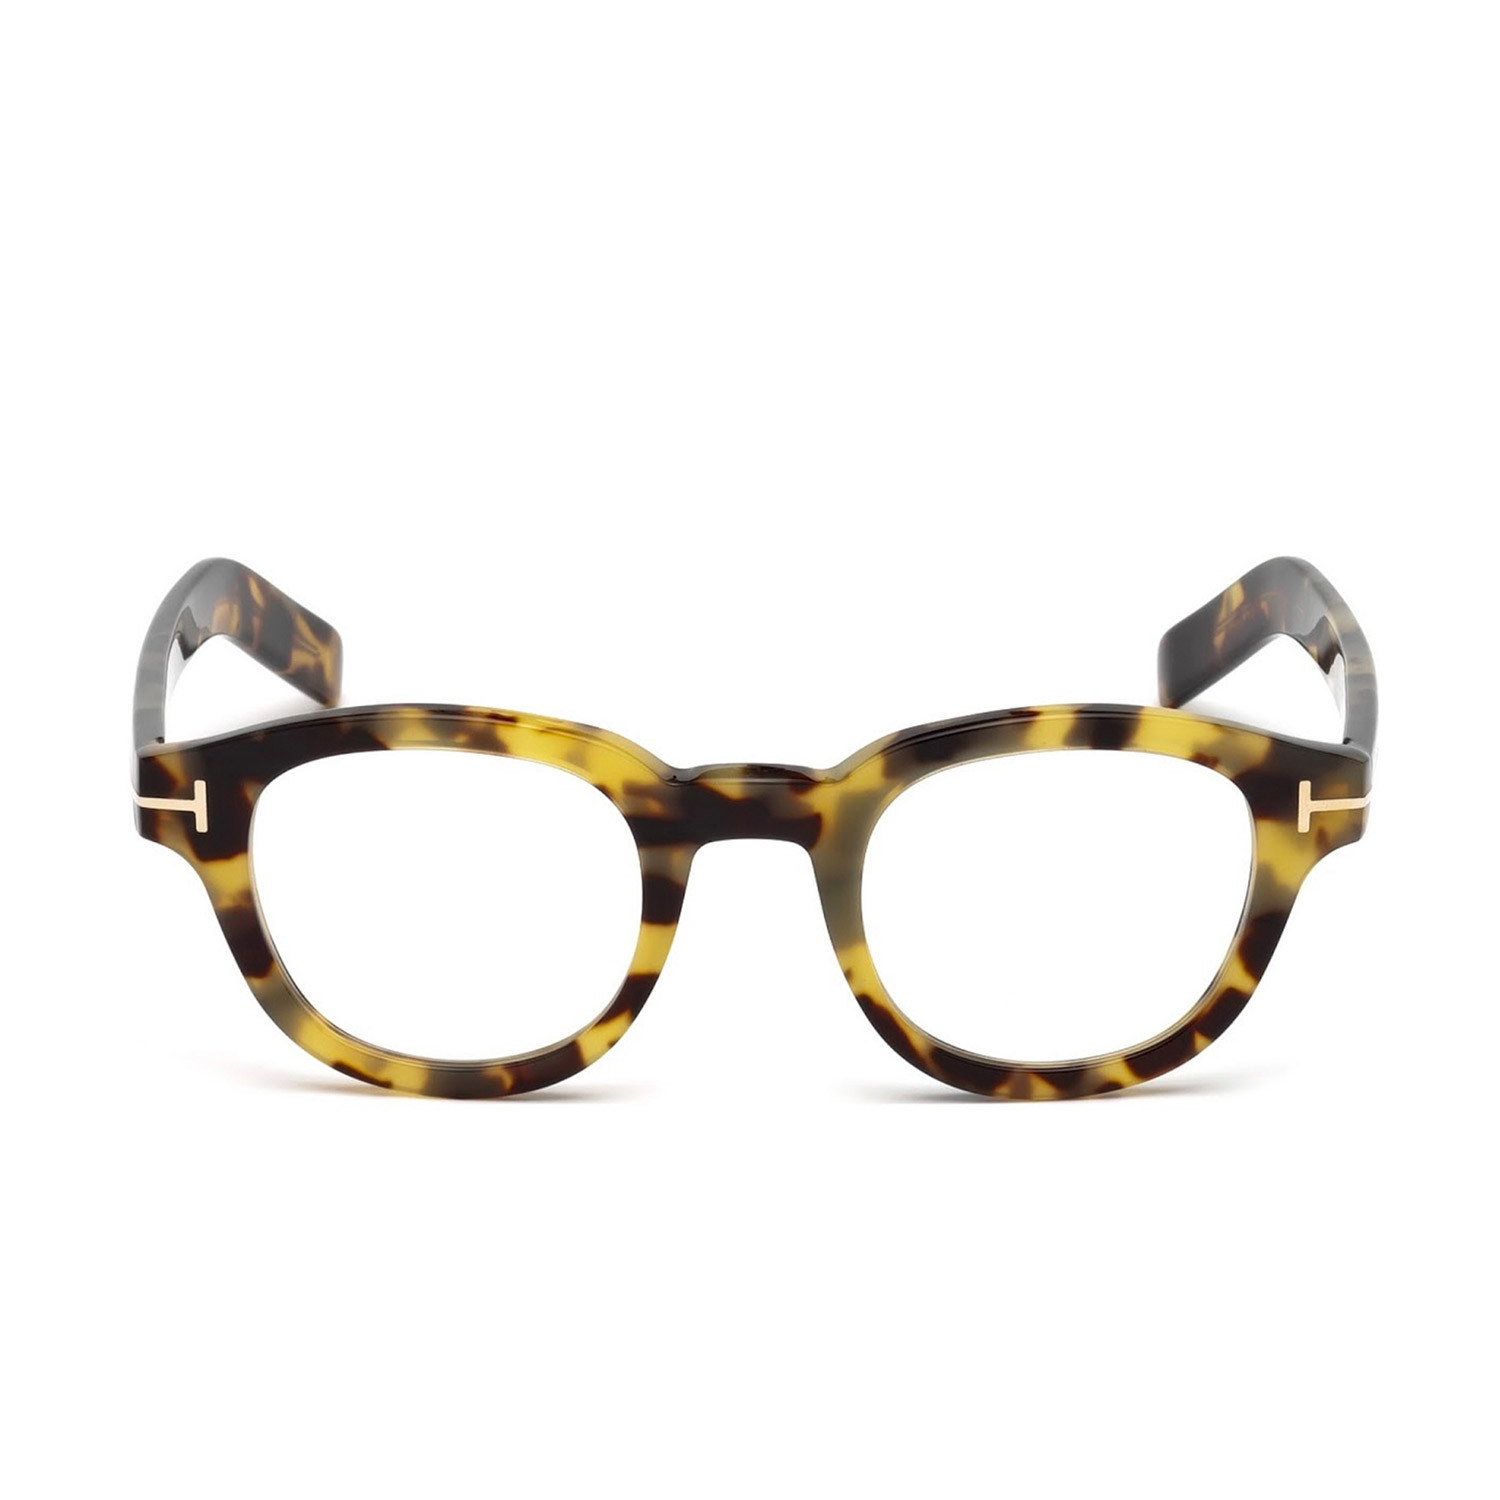 Tom Ford Men S Thick Round Eyeglasses Light Havana Designer Optical Frames Touch Of Modern